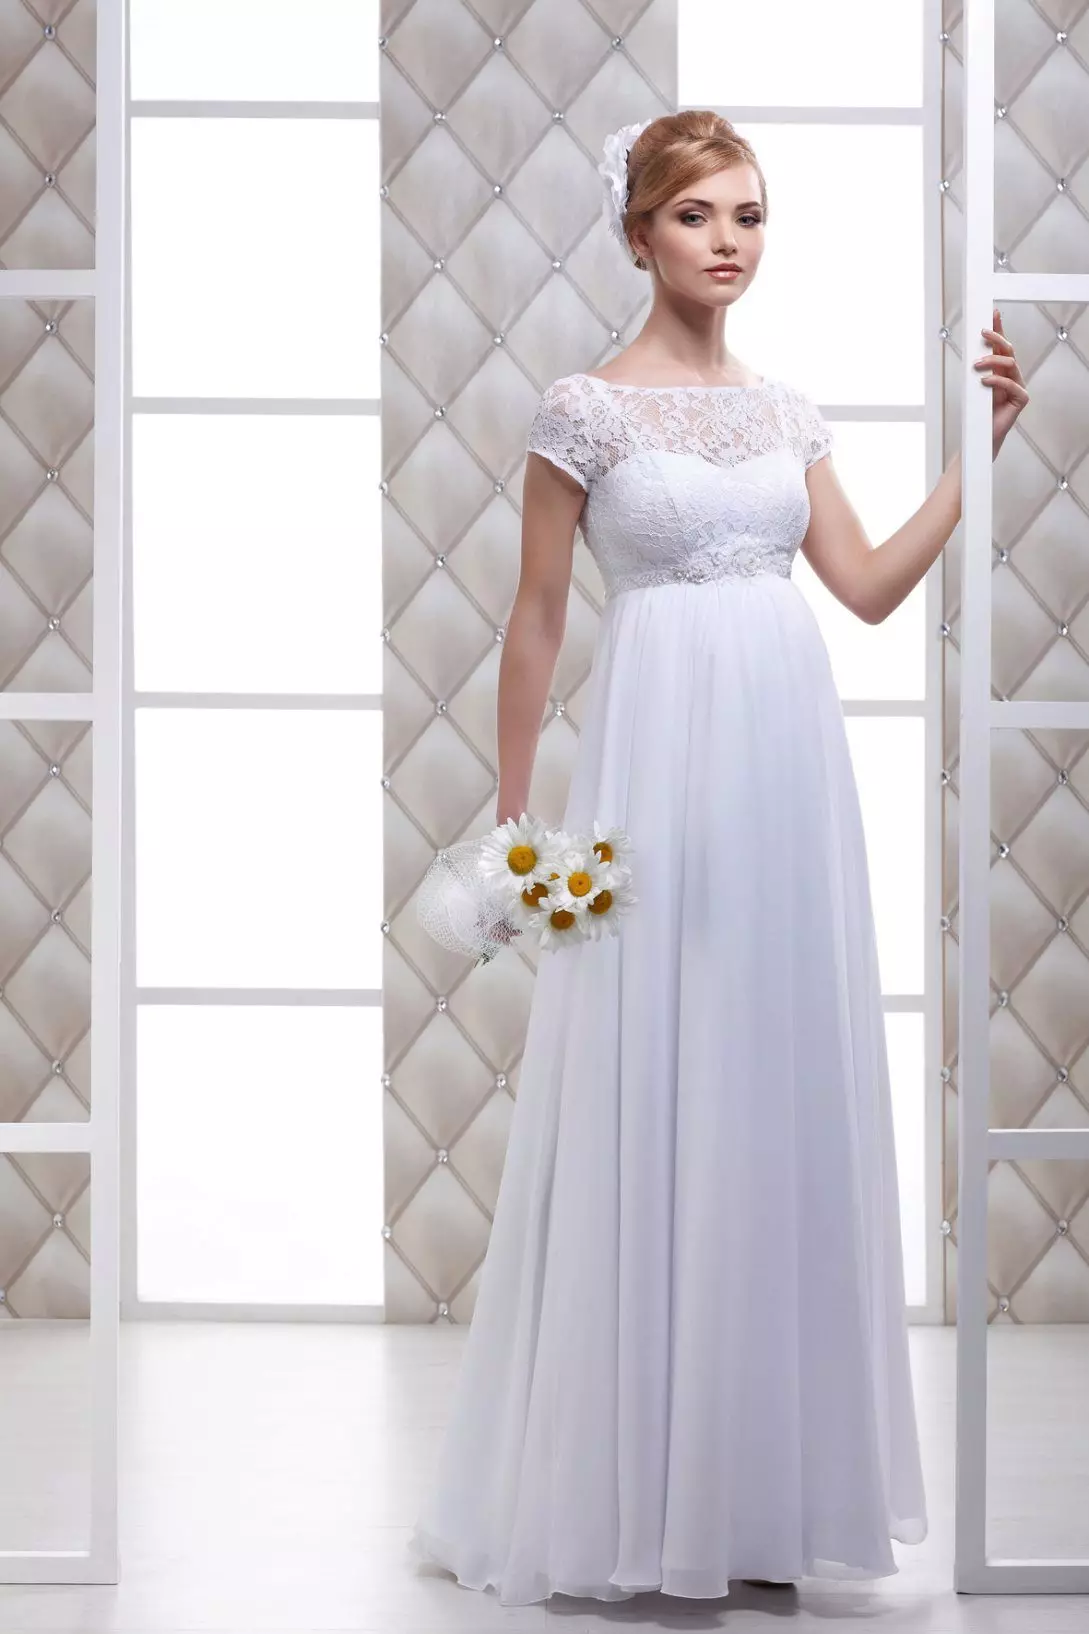 Gaun pengantin dari taffeta untuk wanita hamil